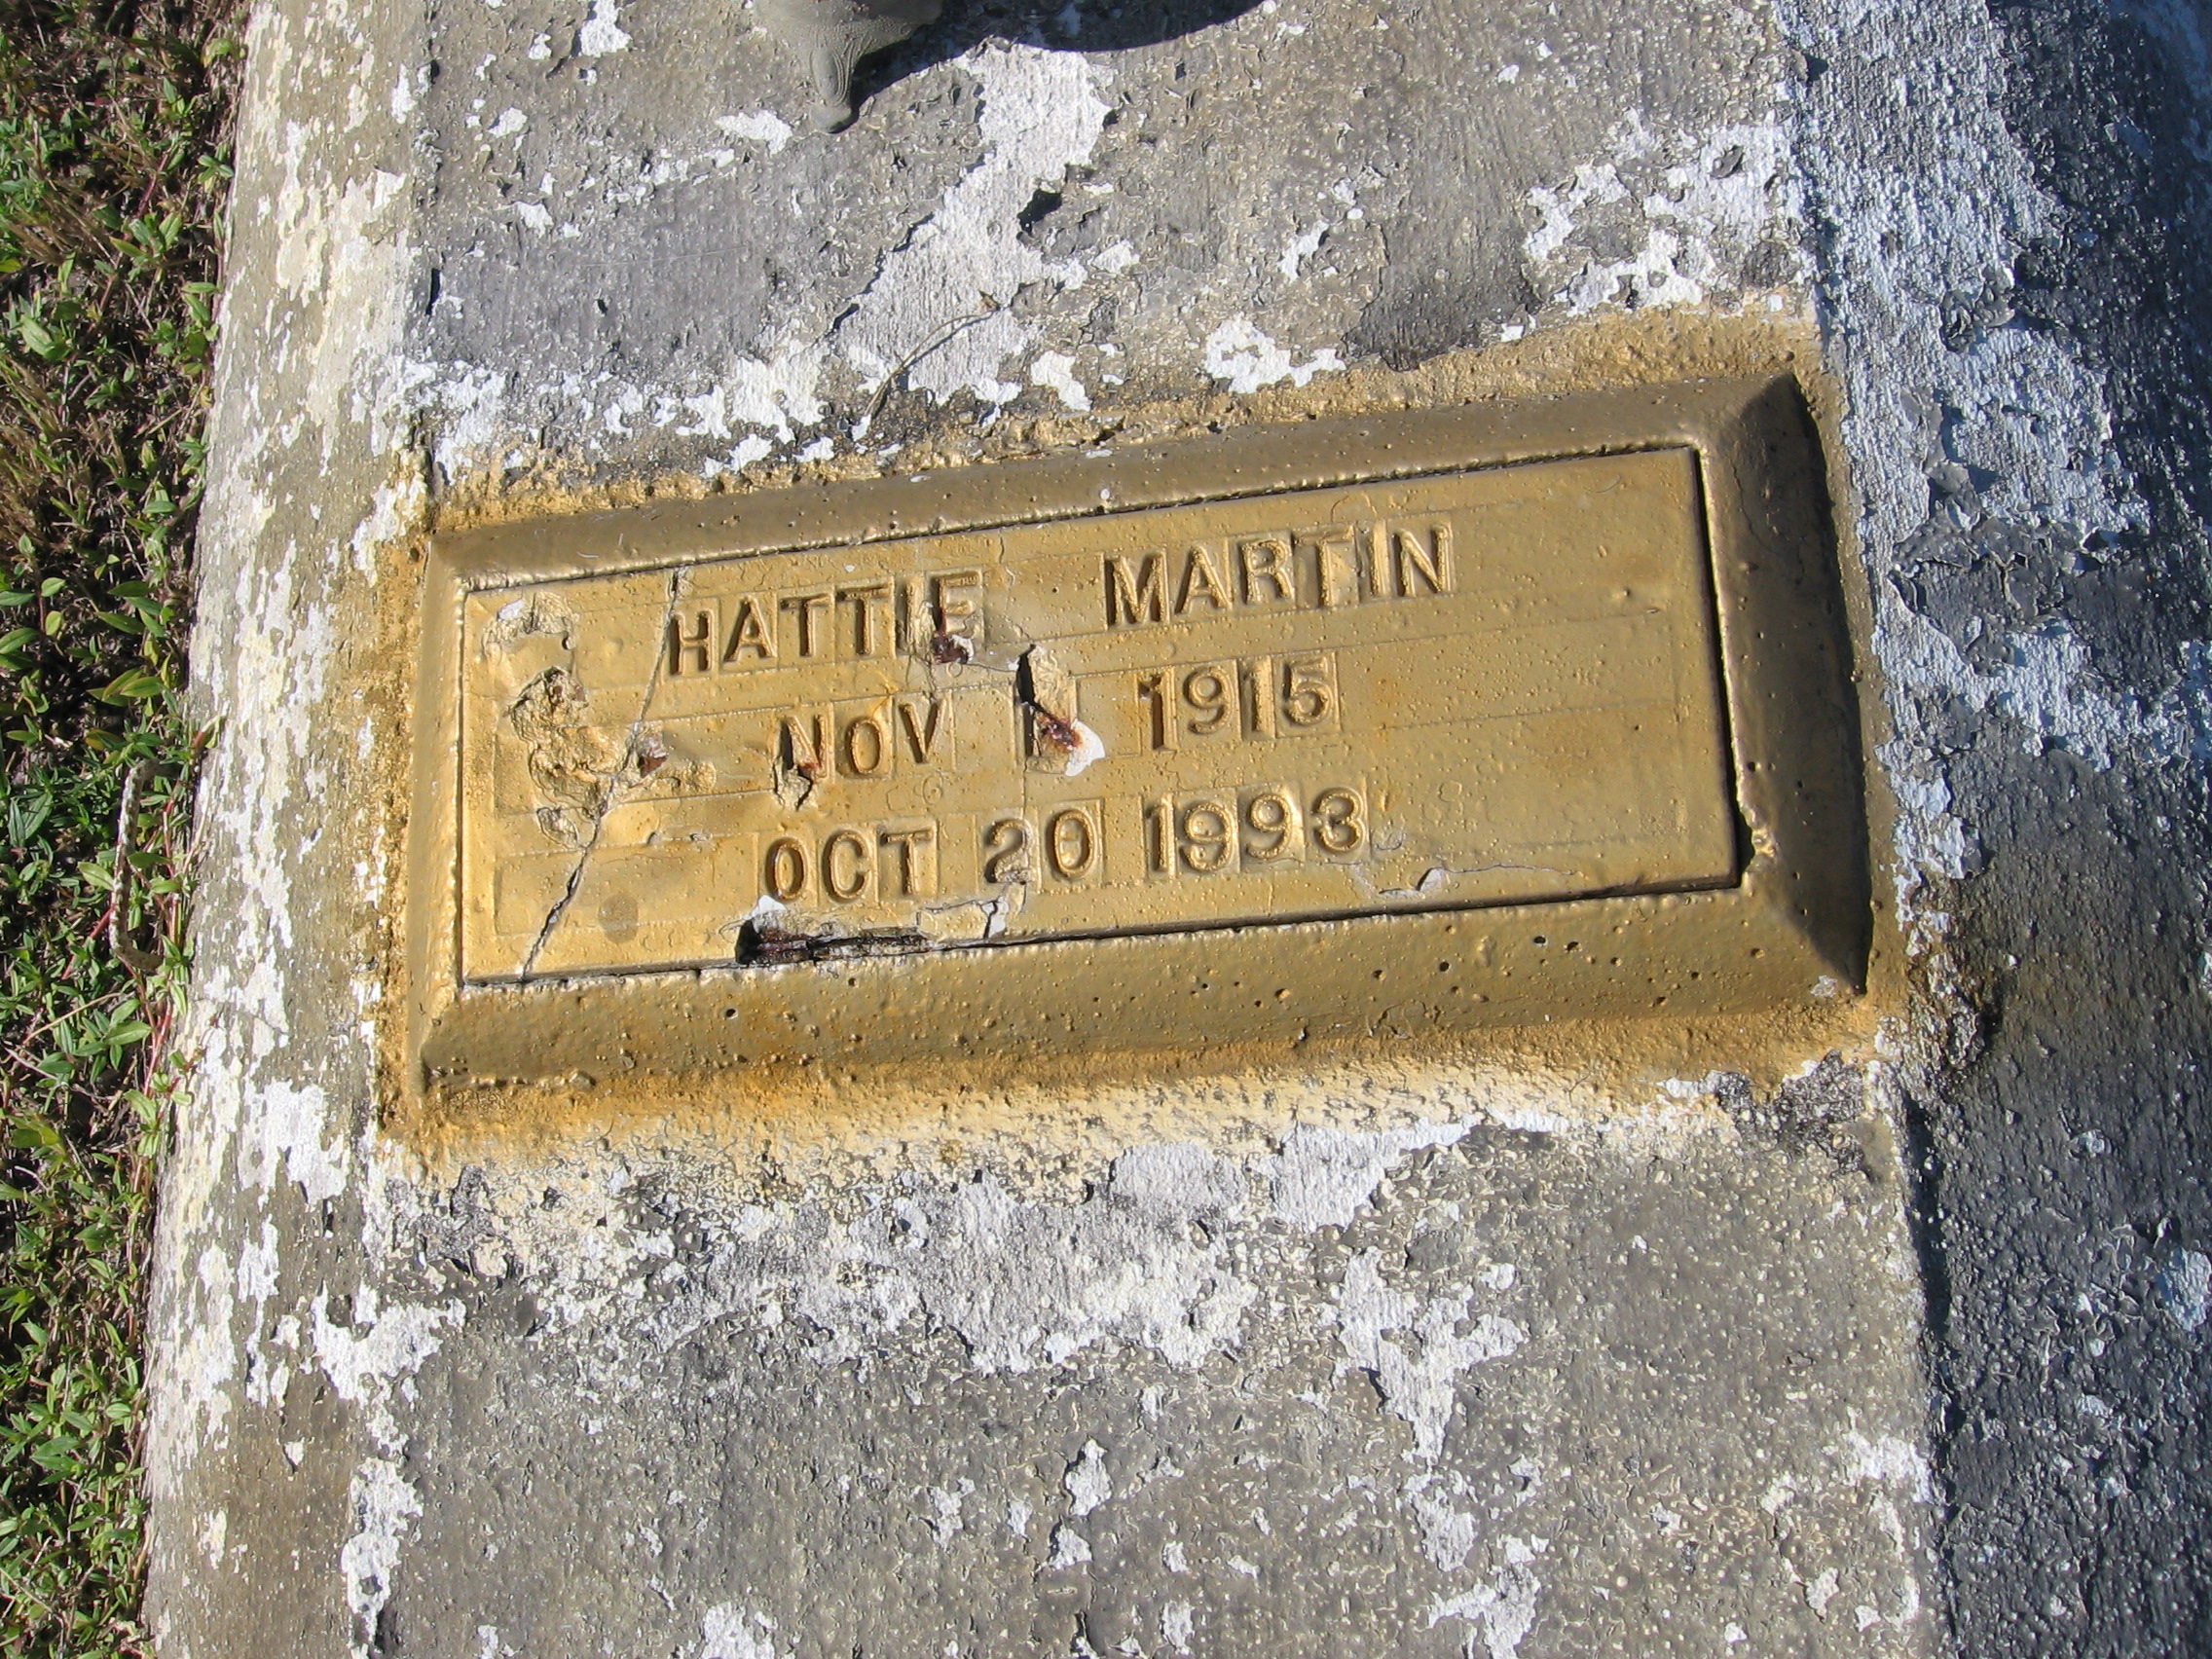 Hattie Martin